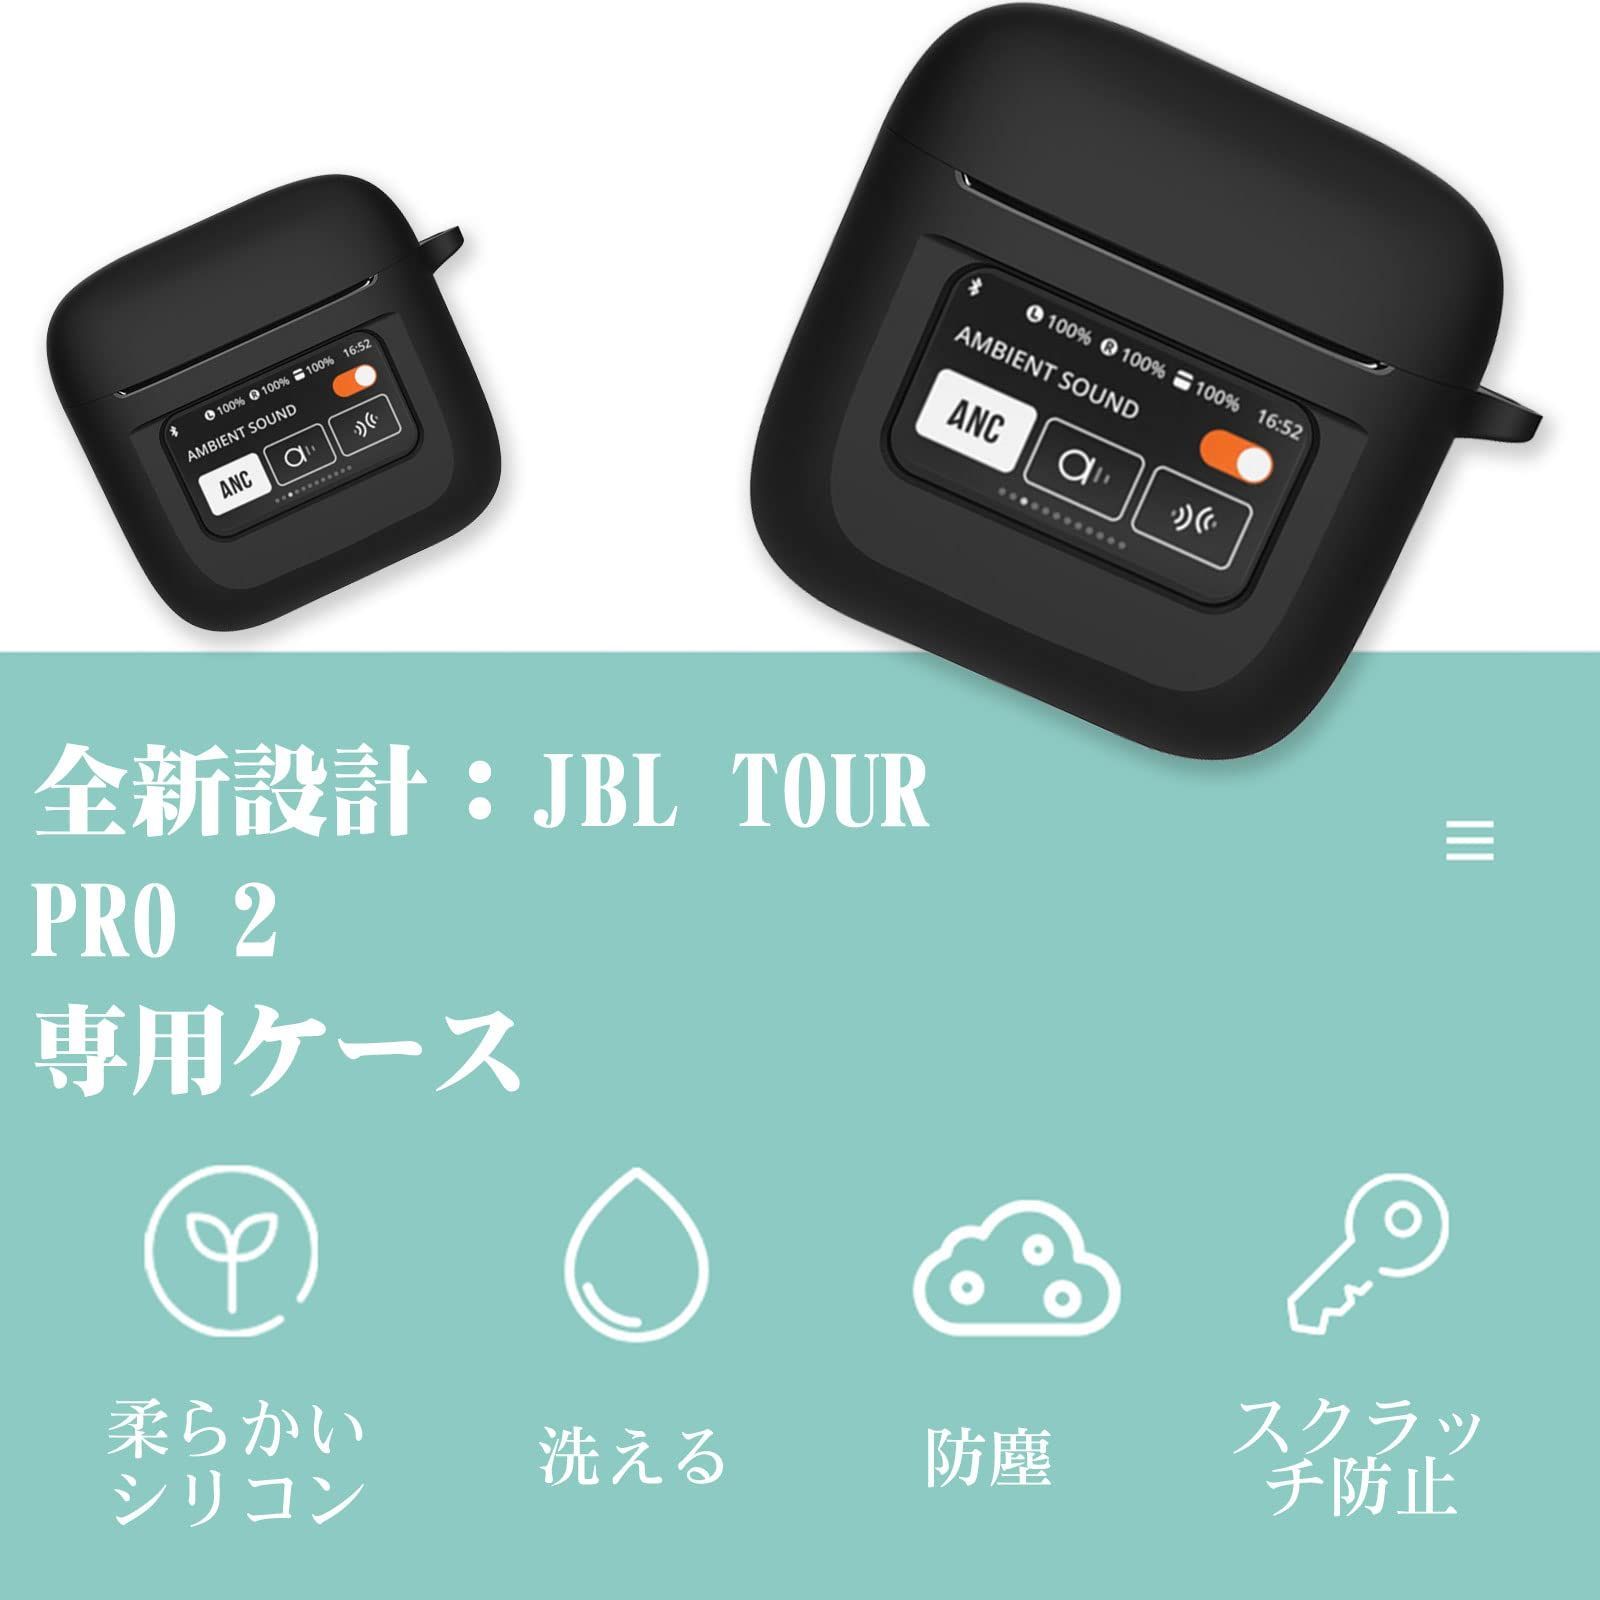 JBL TOUR PRO 用 保護カバーケースシリコン製 イヤホンケース